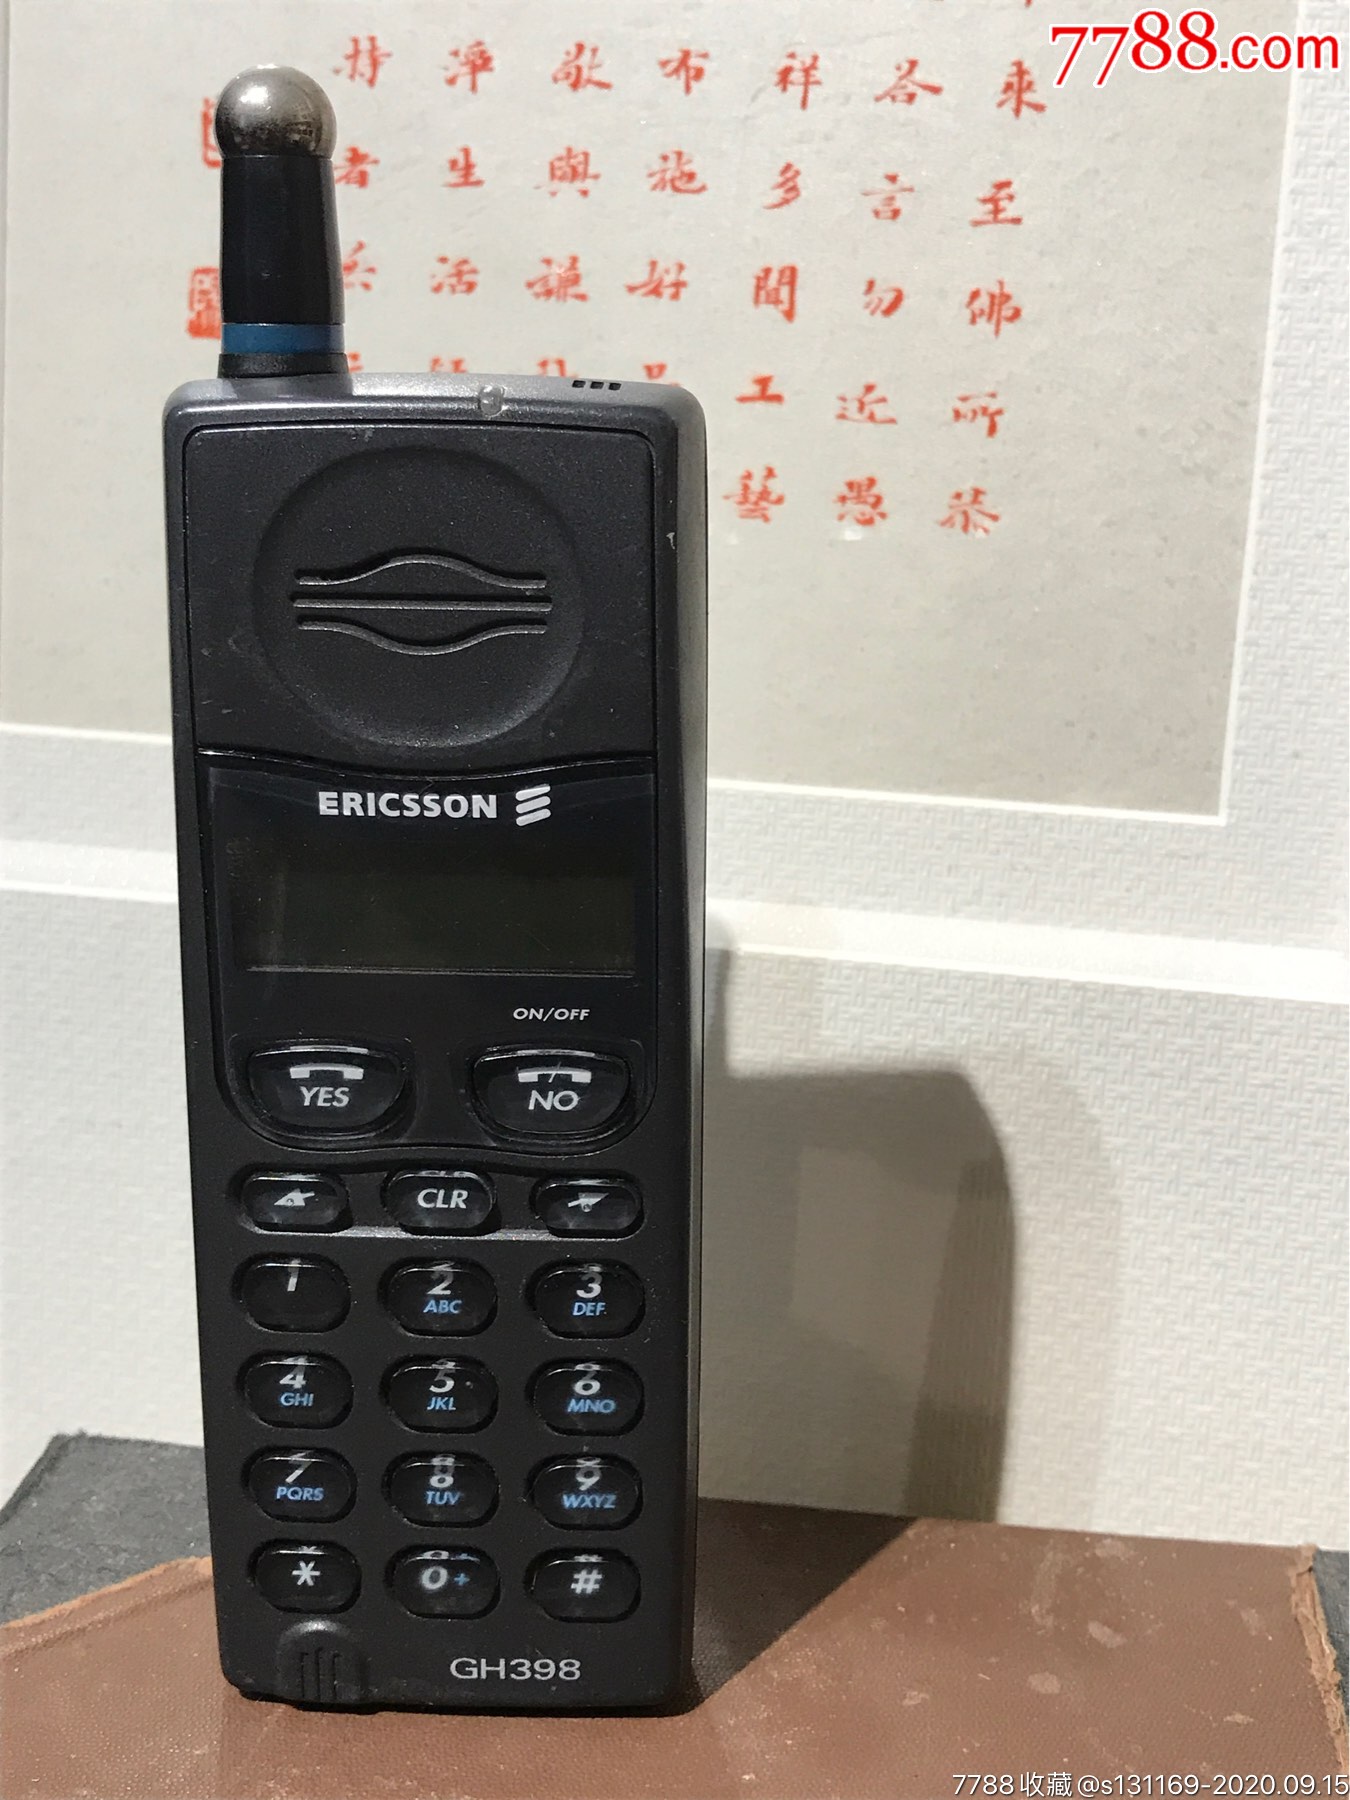 爱立信gh398手机瑞典制造